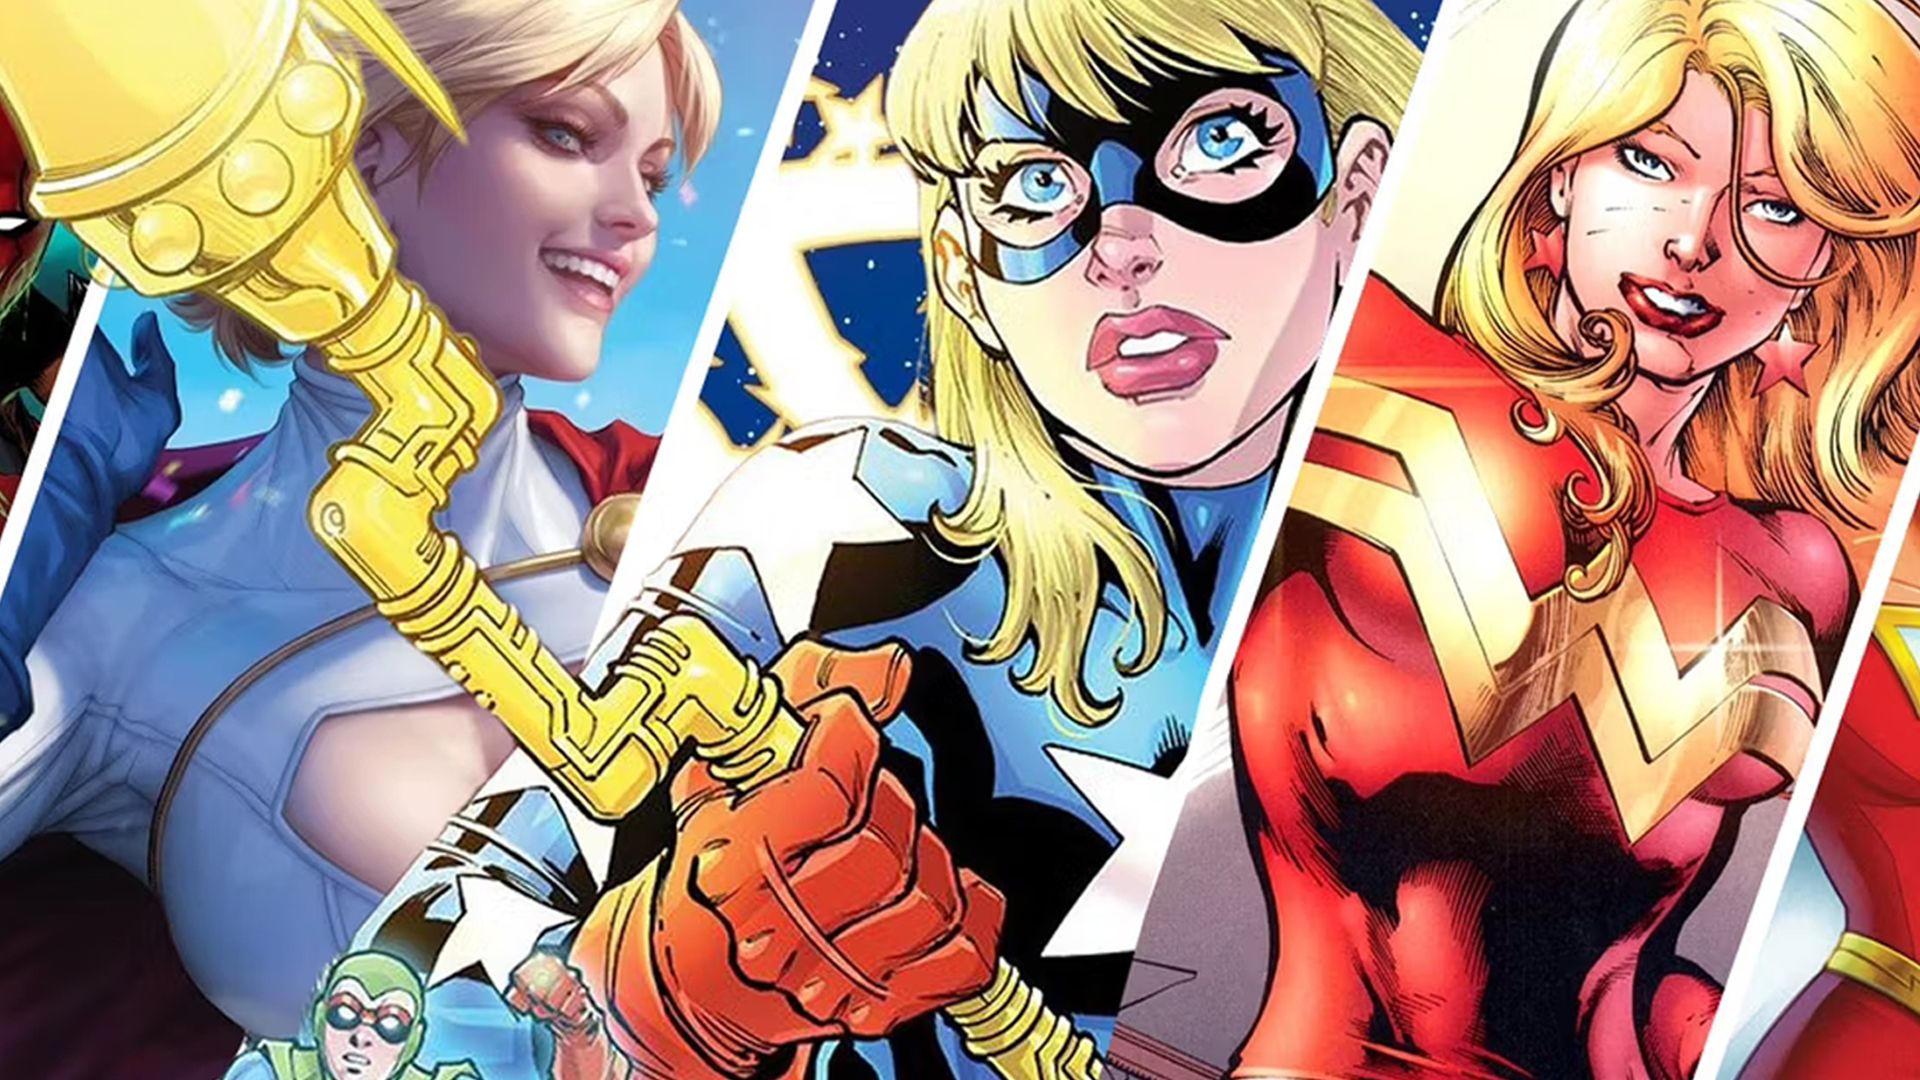 A split image of Power Girl, Stargirl, and Wonder Girl (Cassie Sandsmark)